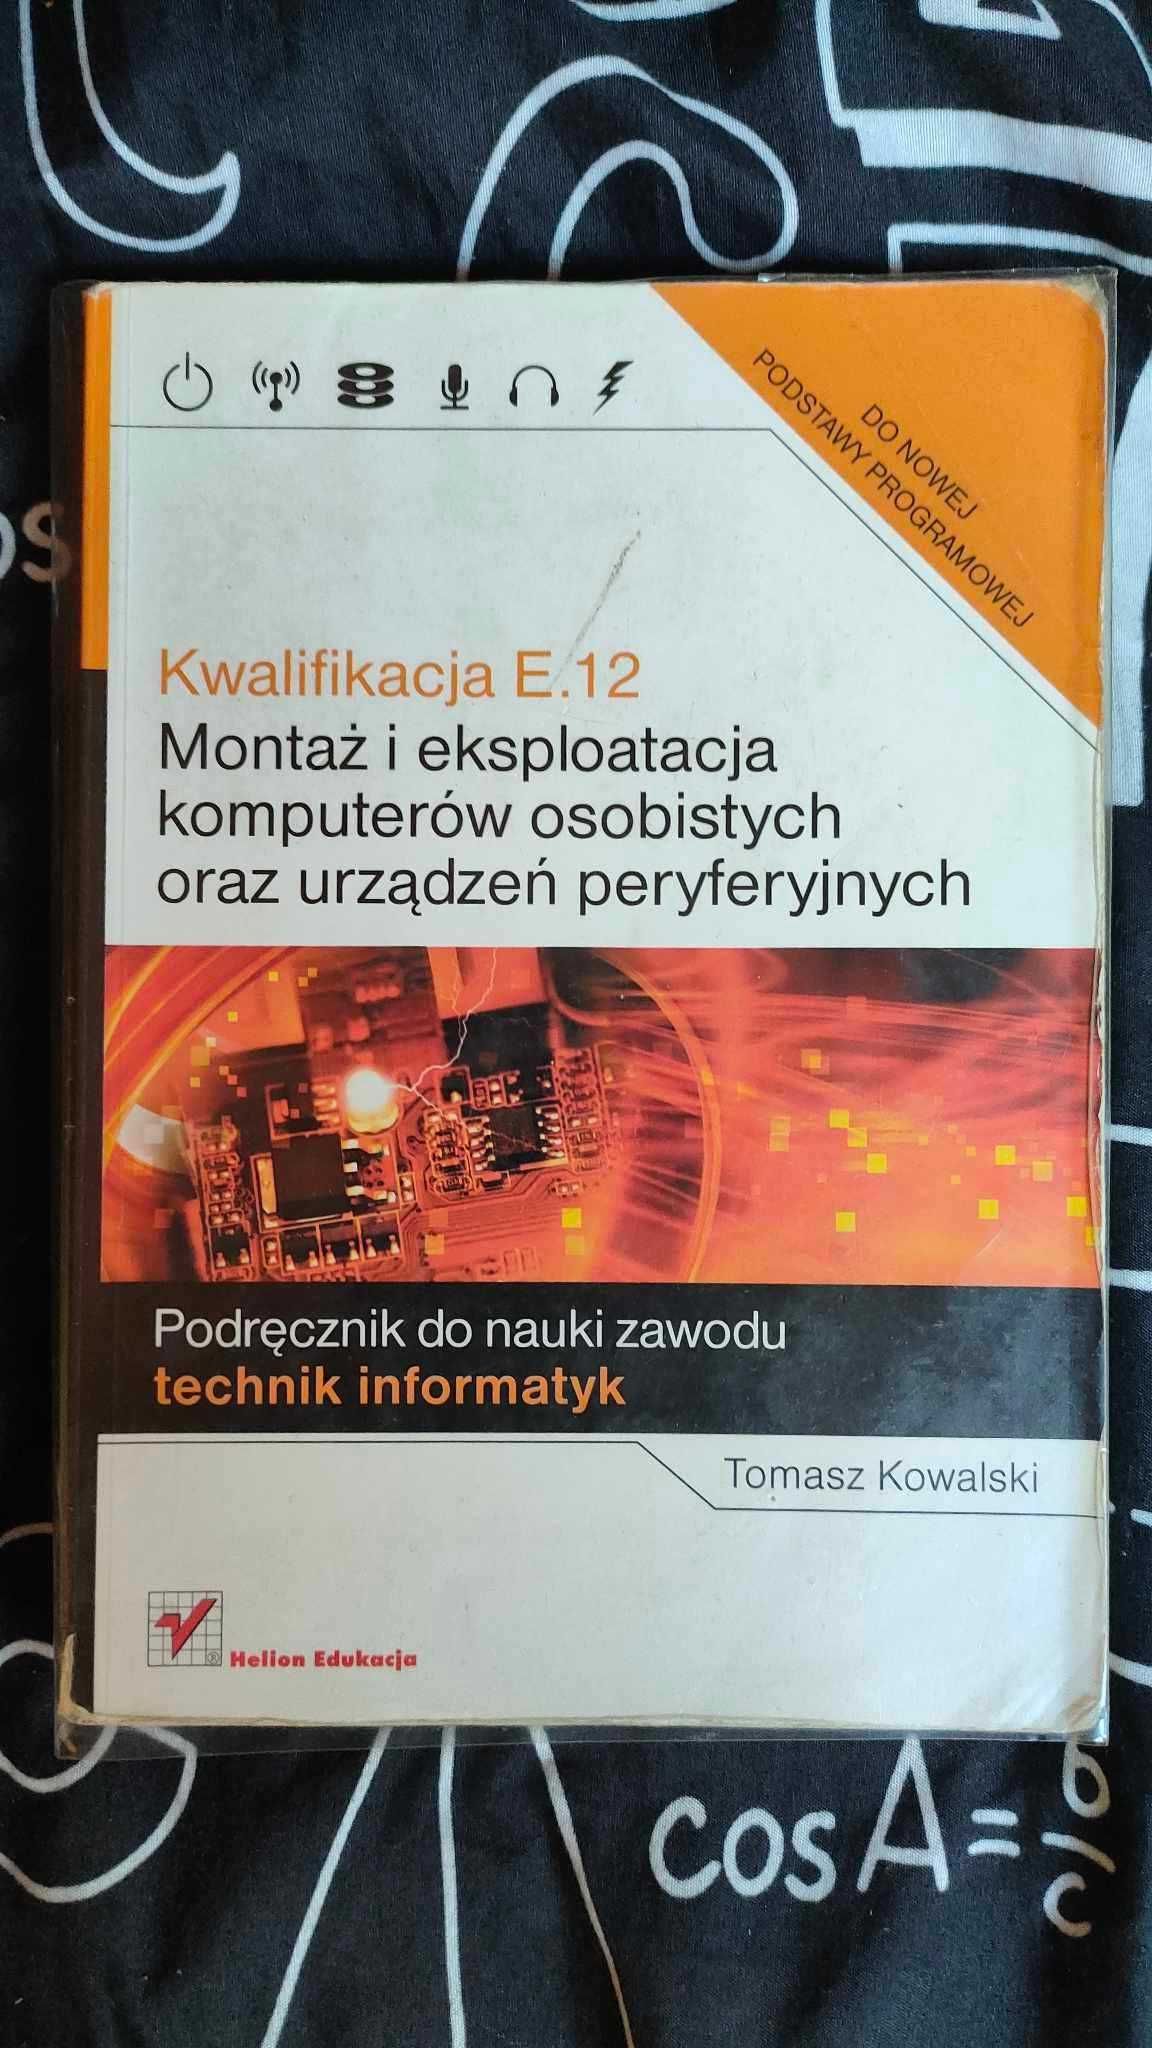 Kwalifikacje E.12 Tomasz Kowalski